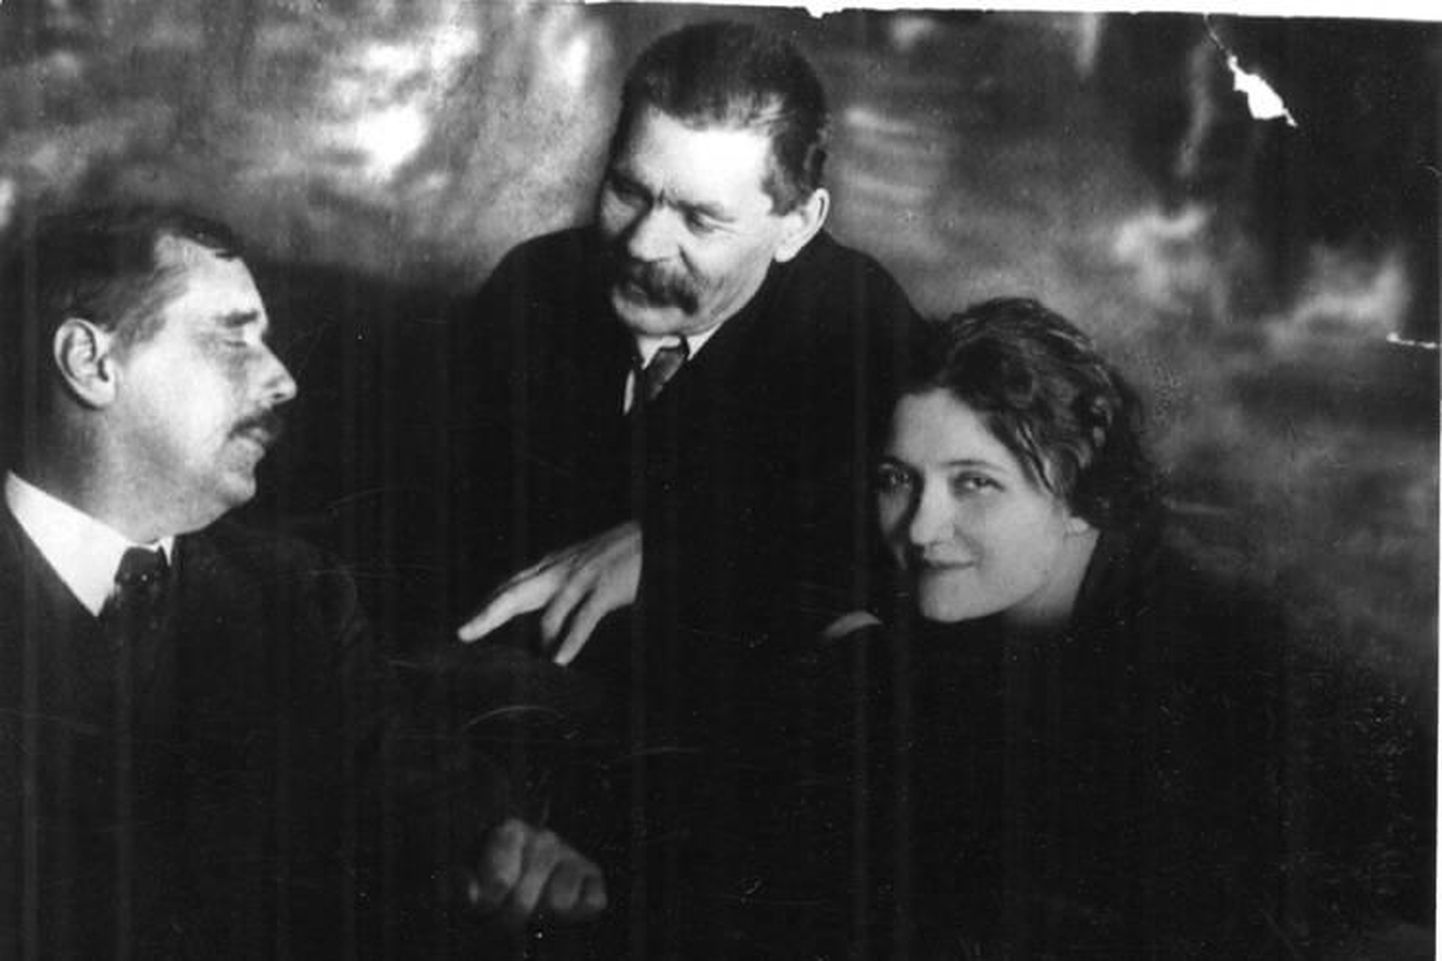 Juulis peaksid Herbert George Wells (vasakult), Maksim Gorki ja nende ühine muusa Maria Zakrevskaja neljapäevase vahega astuma lavalaudadele nii Jänedal kui ka Tõstamaal.